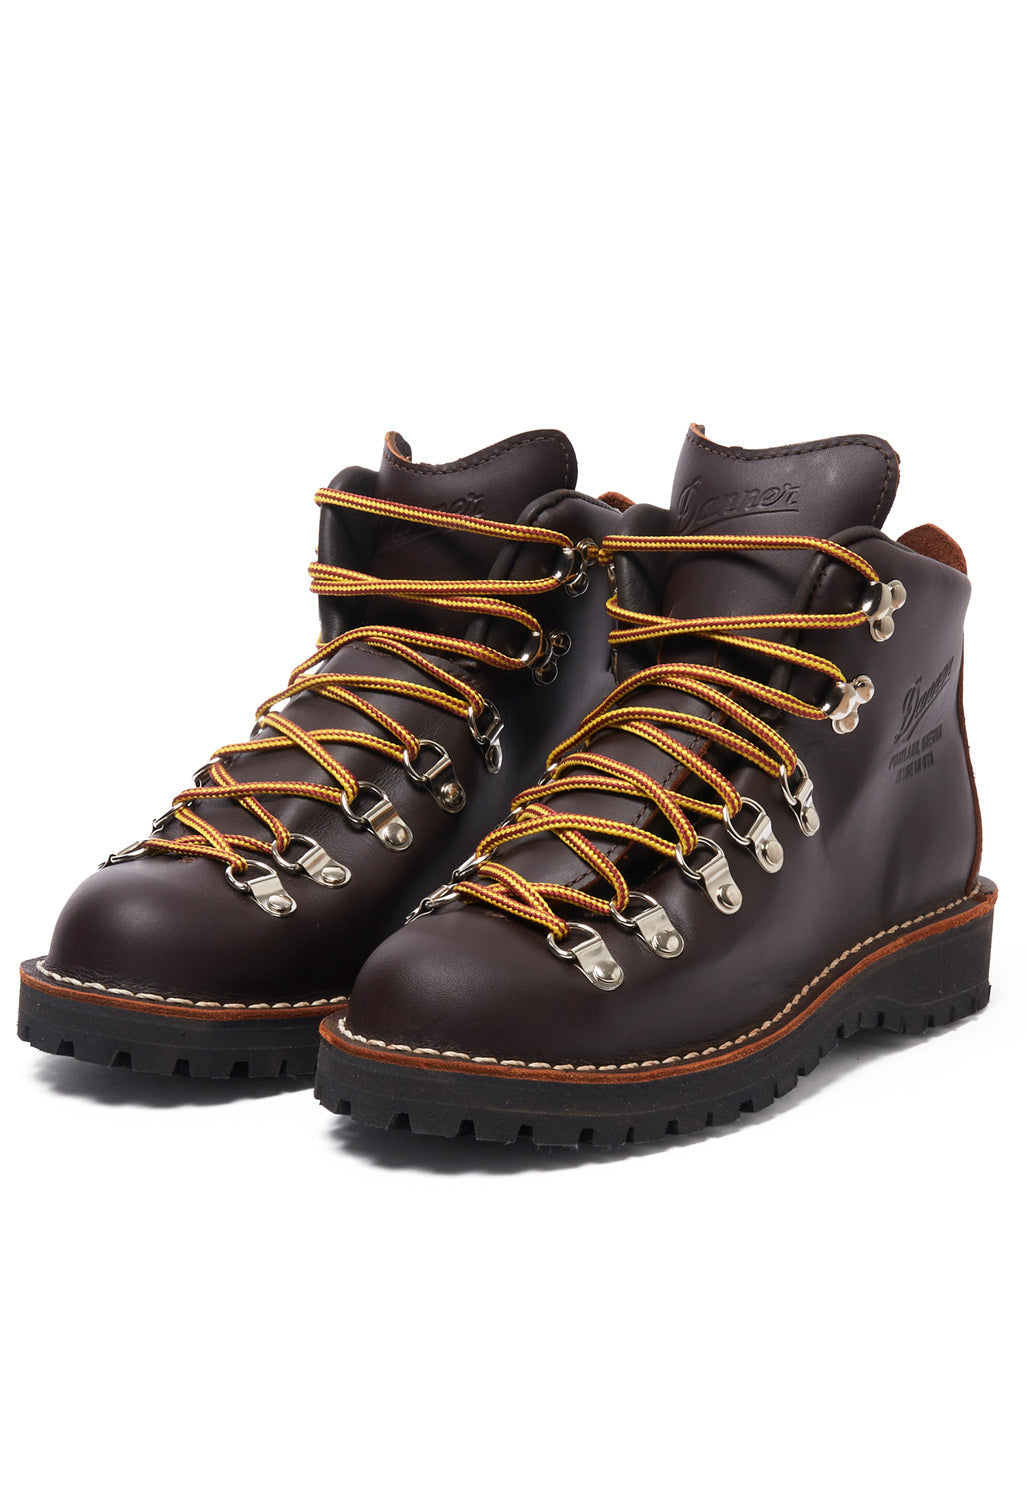 Danner Mountain Light Women's Boots - Brown